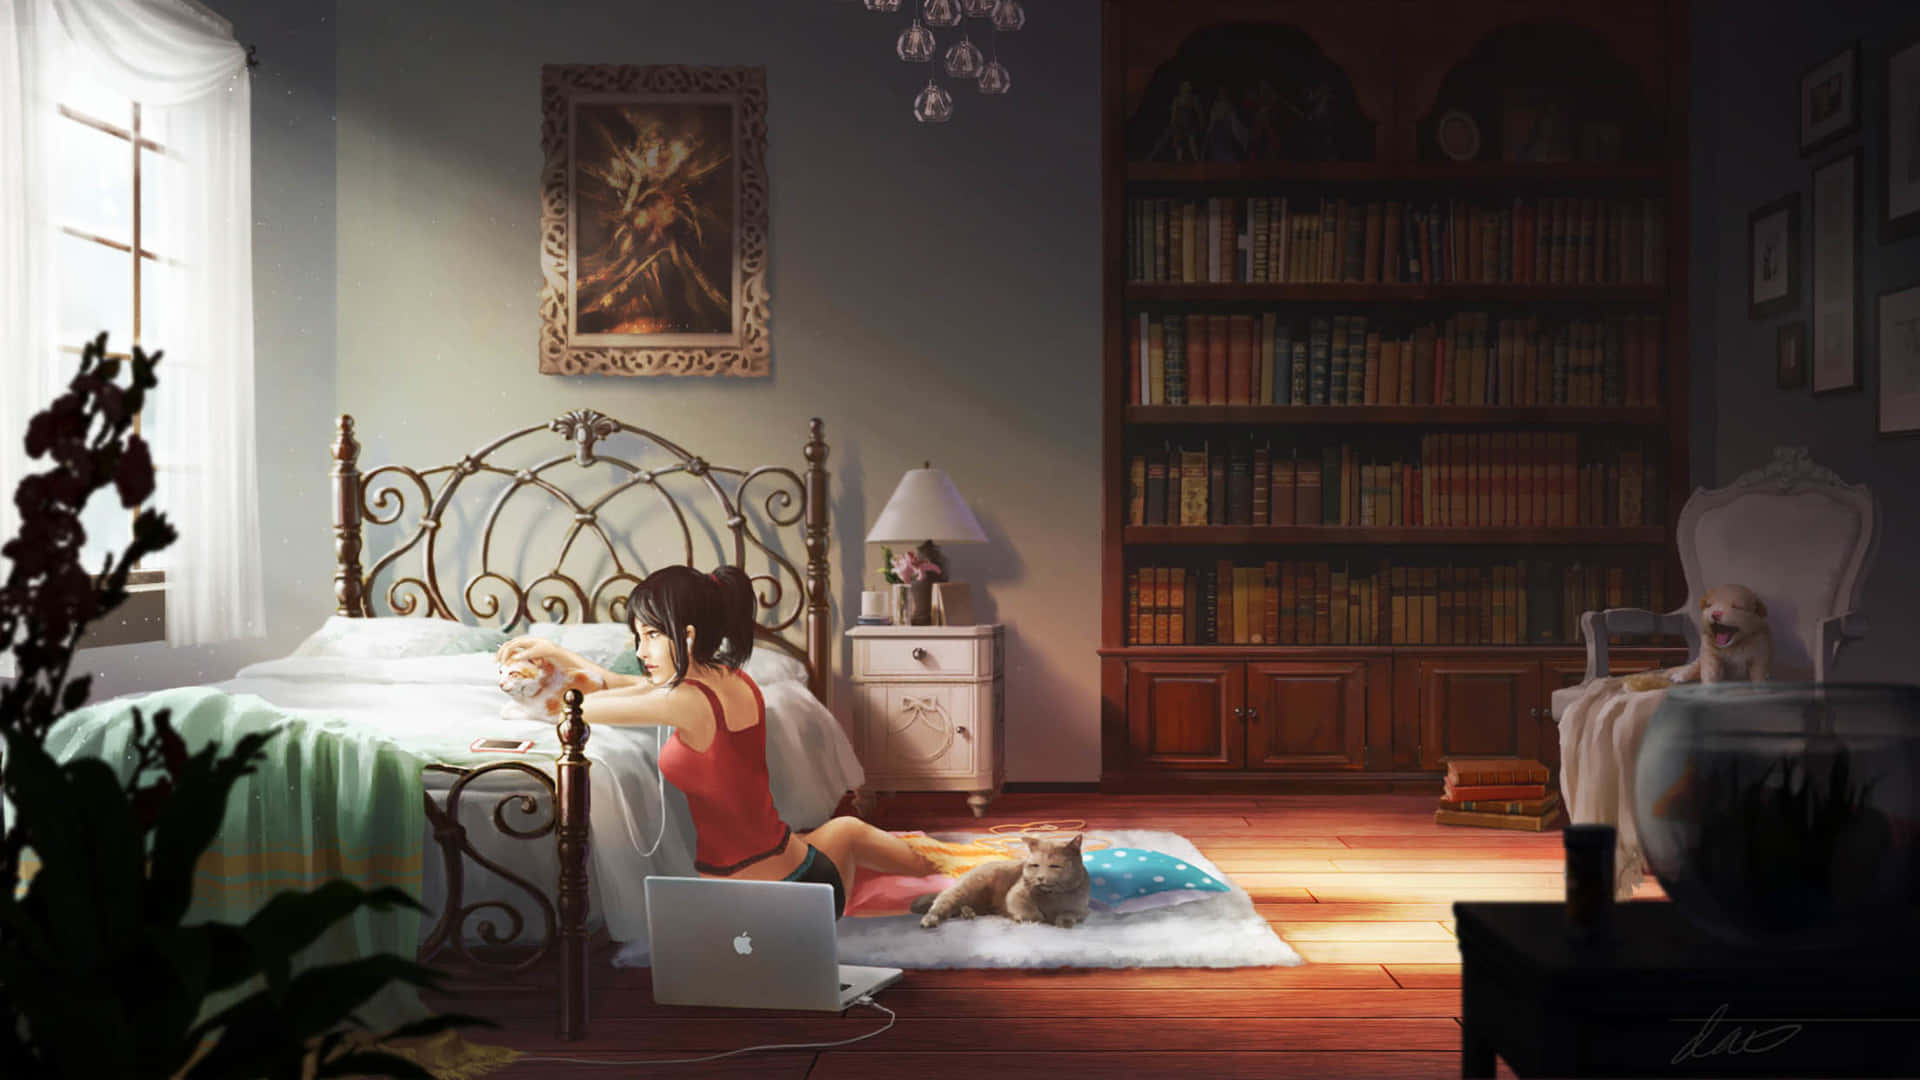 Phòng ngủ trong anime luôn mang một nét đẹp lãng mạn, ấm áp và tràn đầy tình cảm. Đặc biệt có những đường nét tinh tế, những màu sắc tươi vui sẽ khiến bạn phải bị thu hút ngay từ giây đầu tiên.